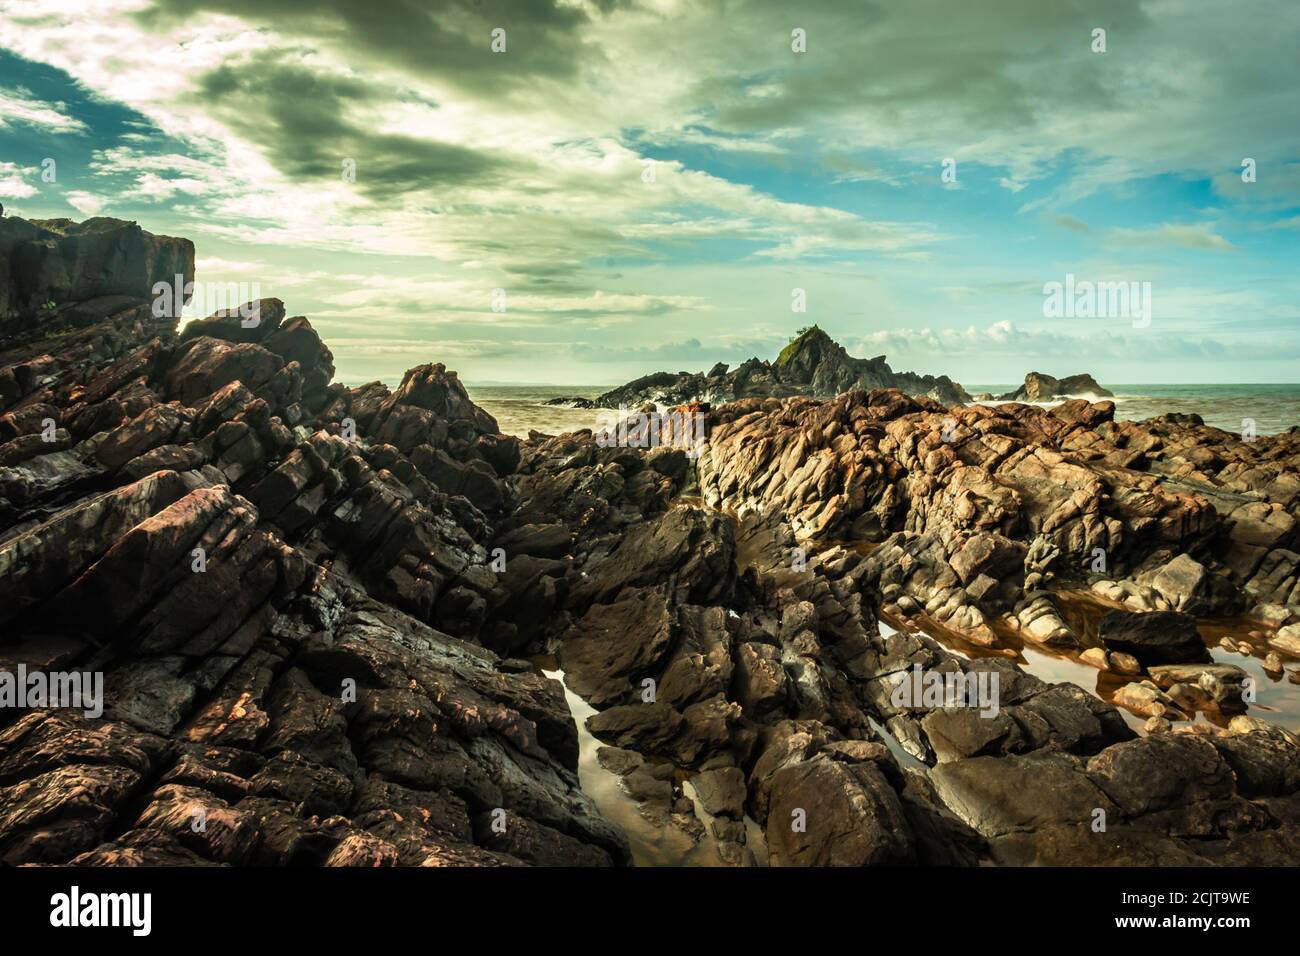 la formazione naturale di roccia a riva del mare a causa delle onde che si infrangono al mattino da un'immagine ad angolo piatto è presa alla spiaggia om gokarna karnataka india Foto Stock